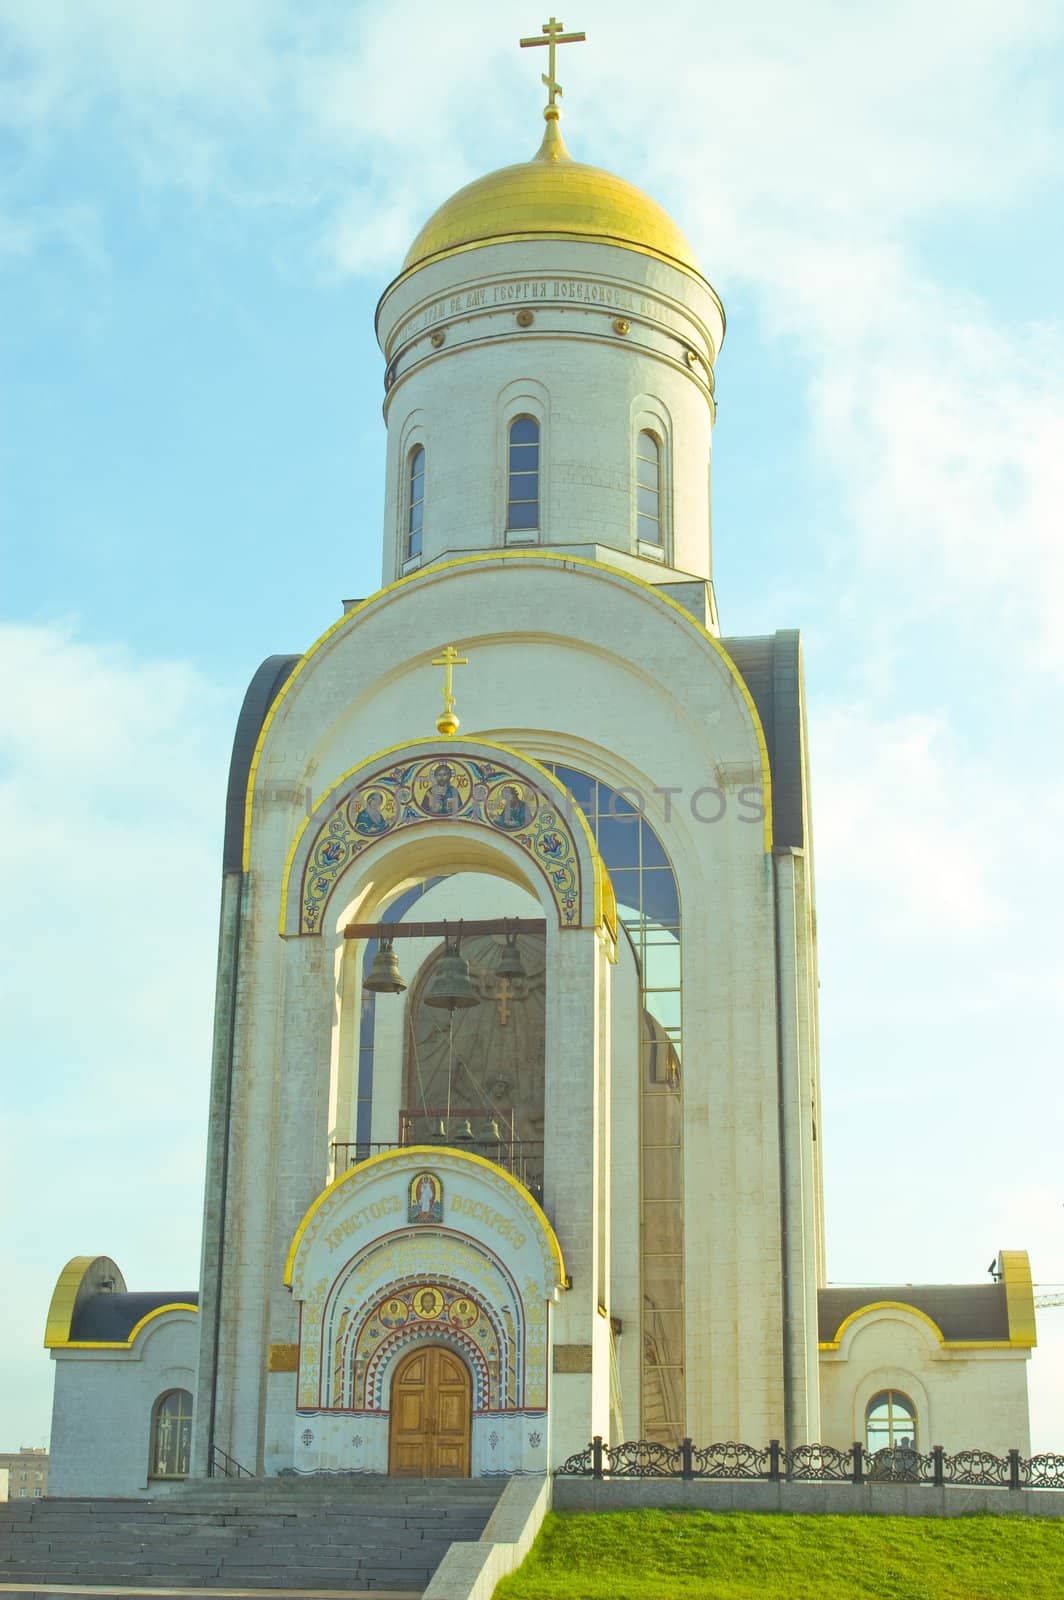 St. George Orthodox Church On Poclonnaya 
Gora In Moscow.